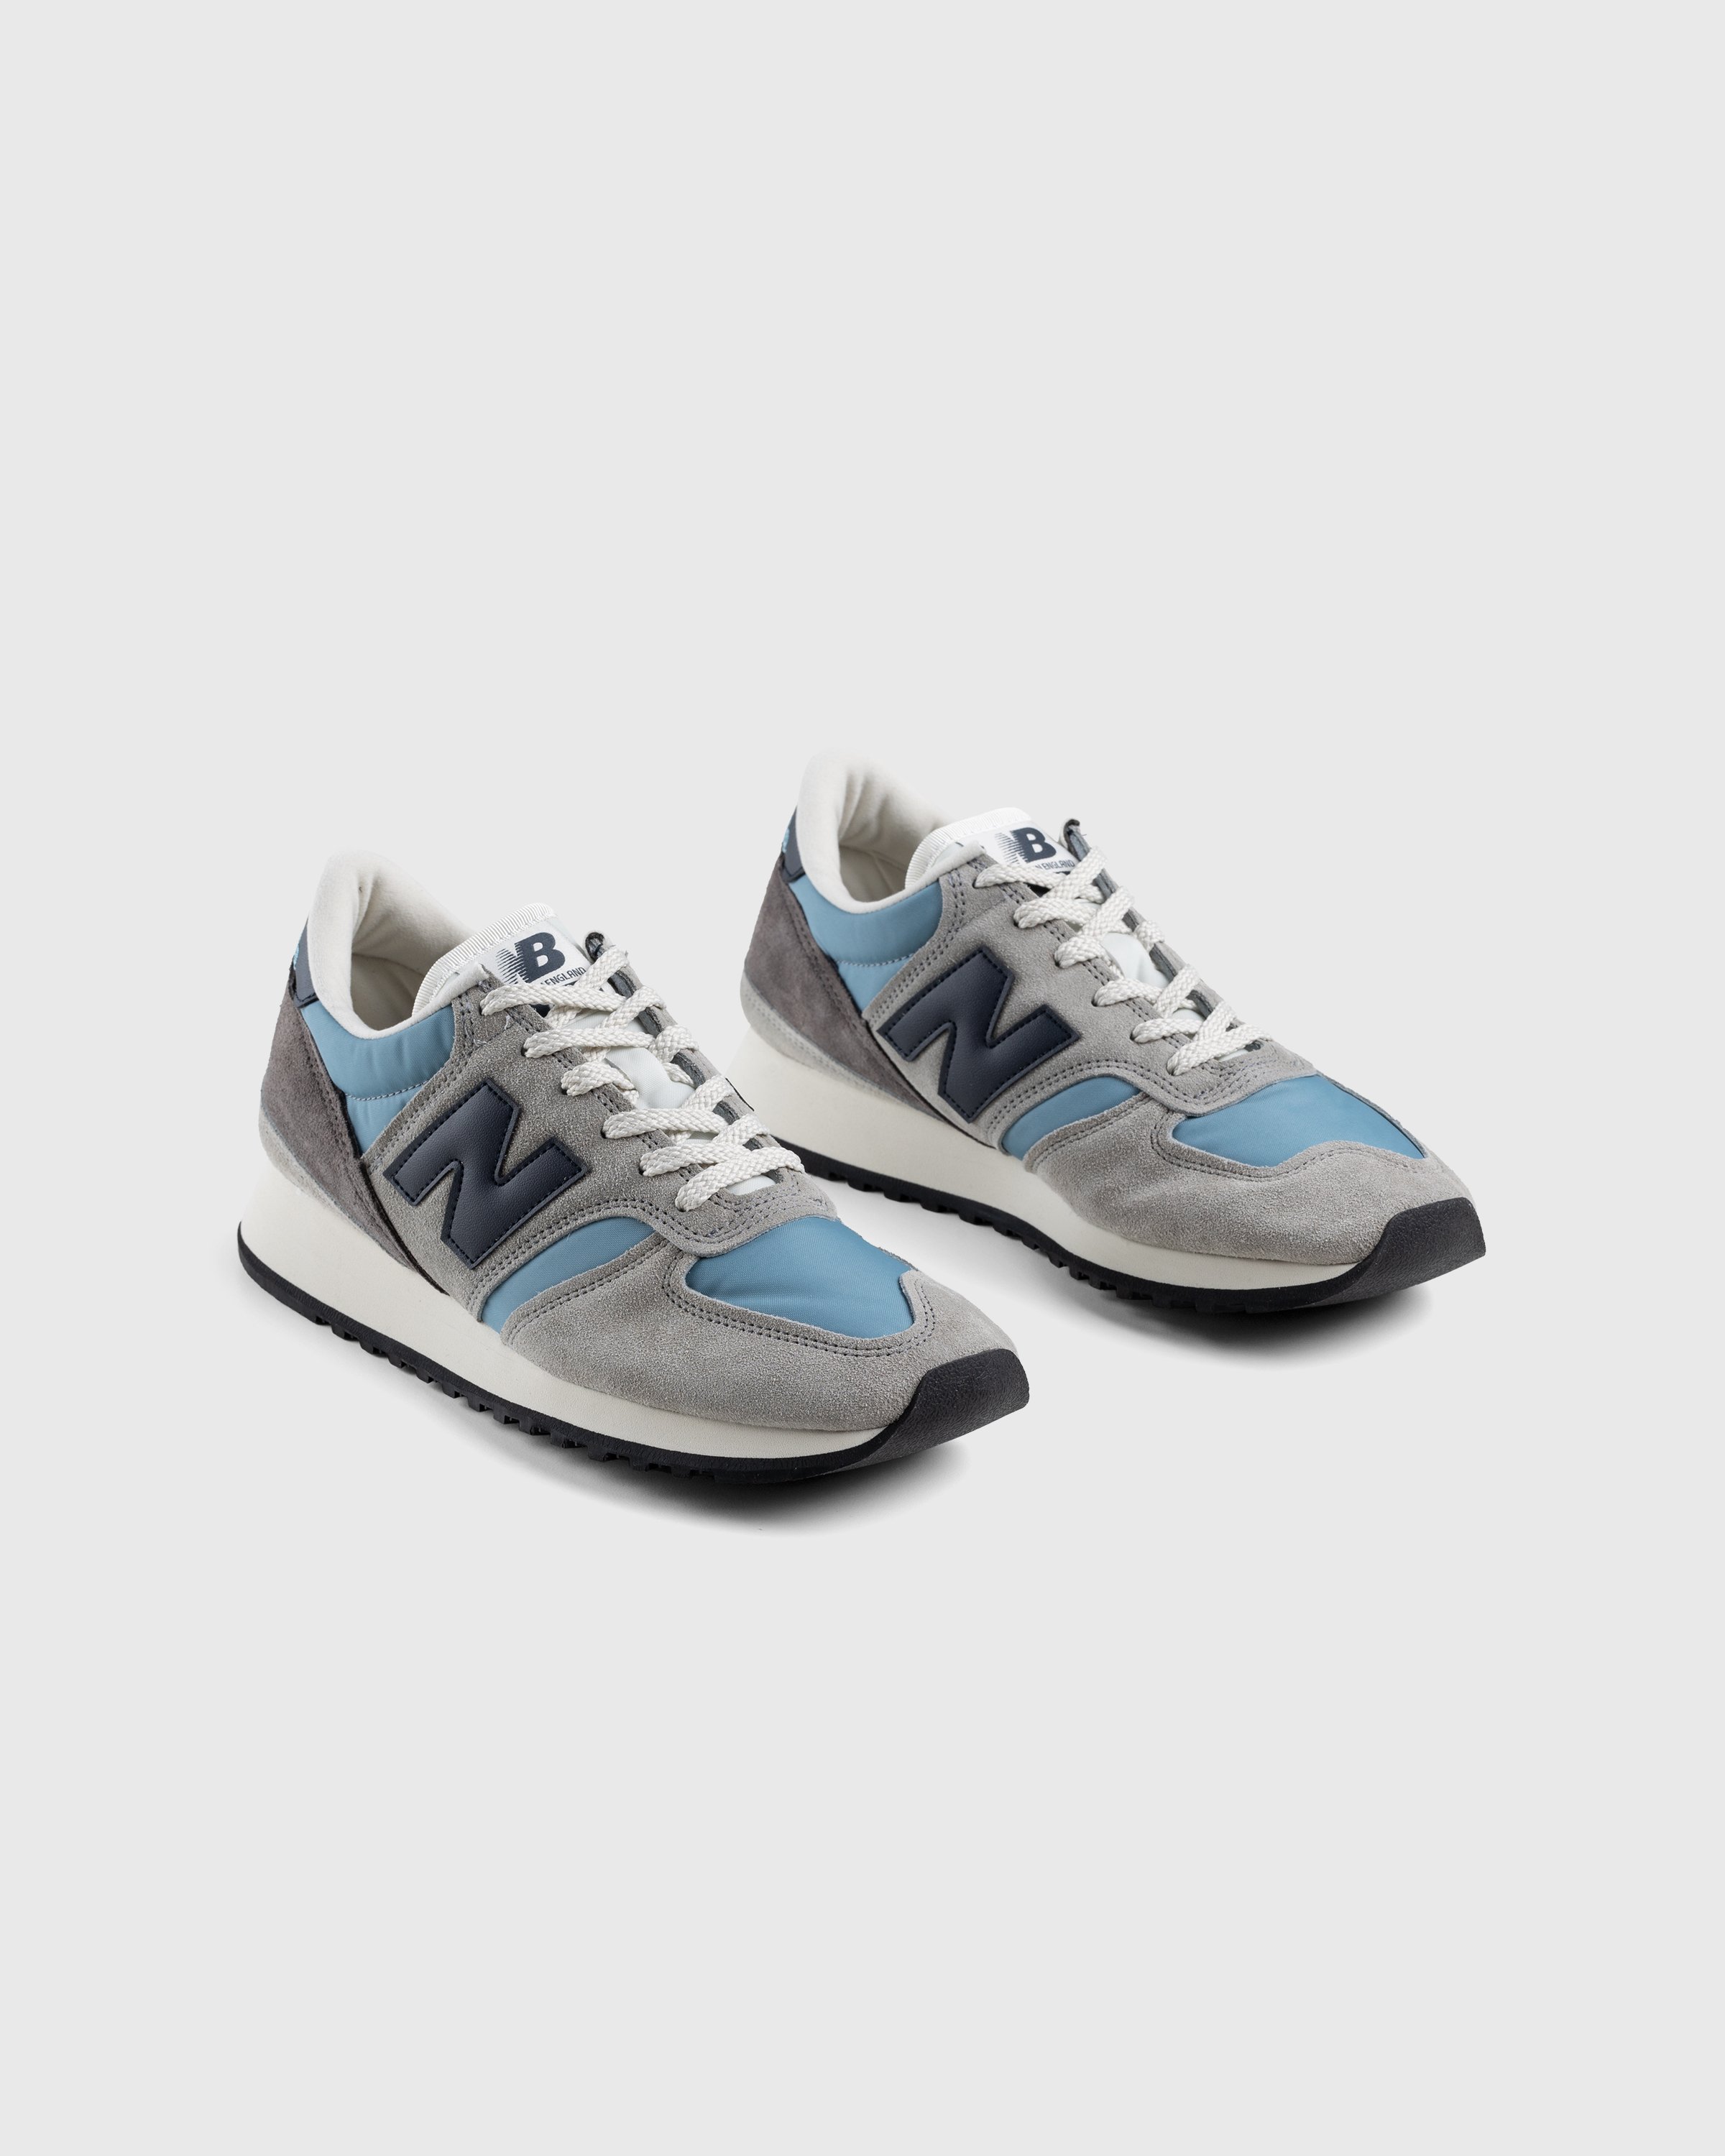 New Balance - M730GBN Grey/Blue - Footwear - Grey - Image 3